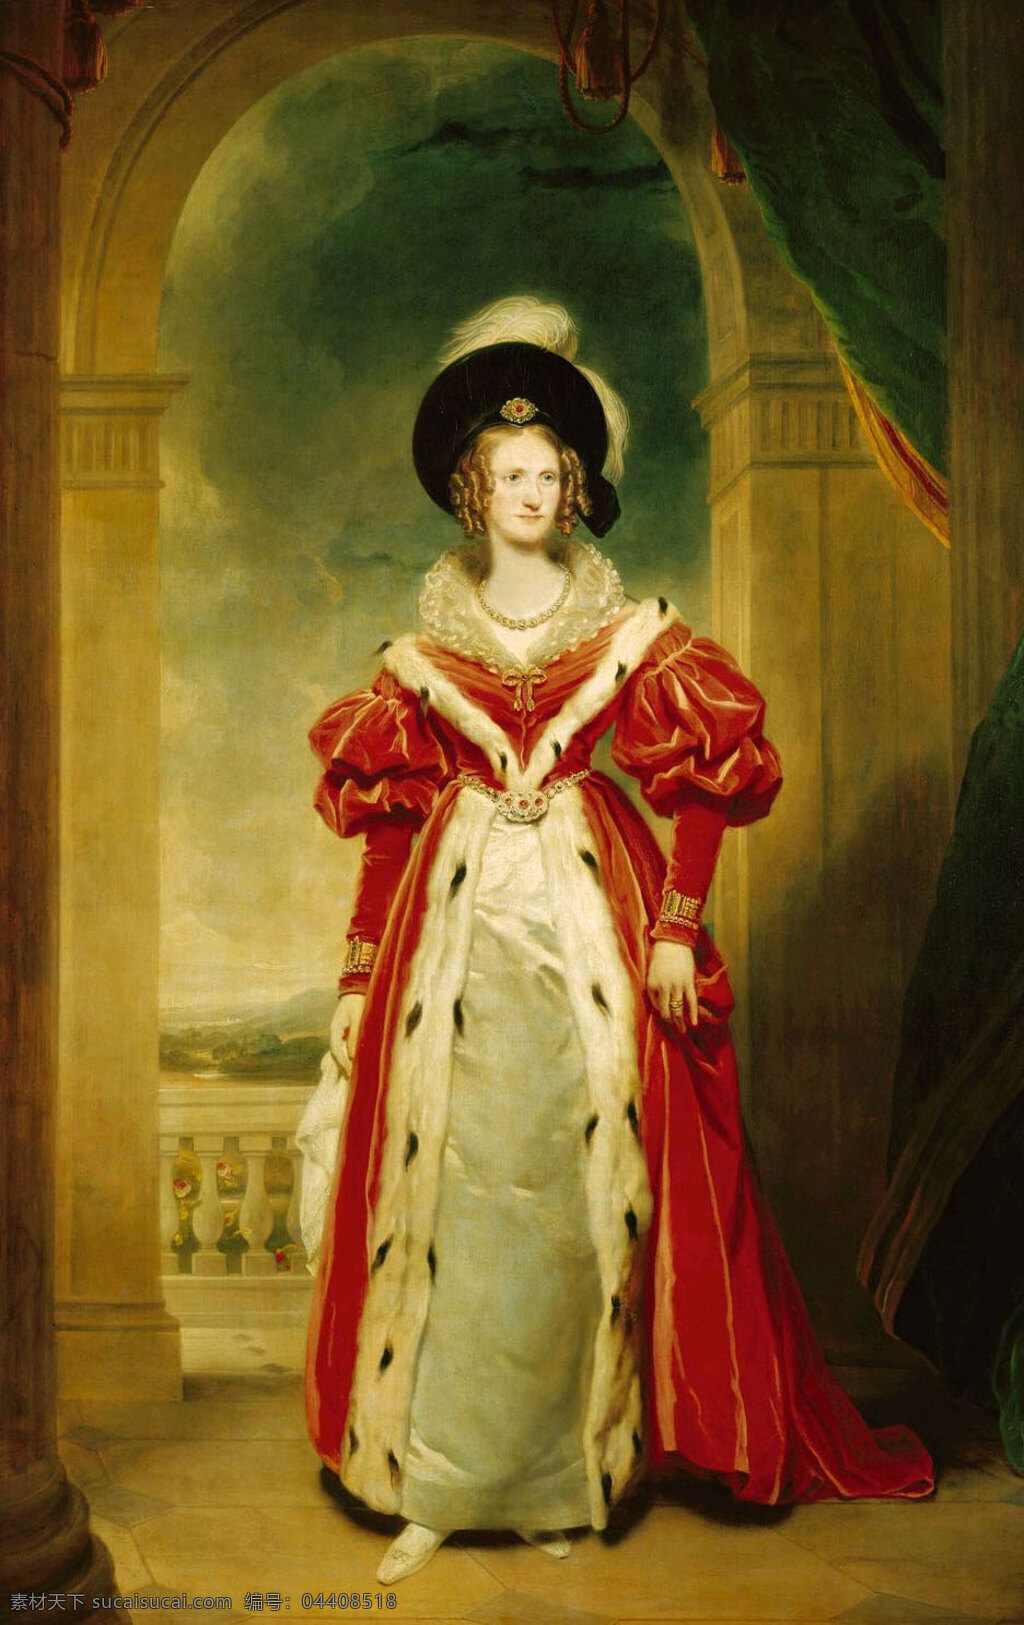 英国 王后 亚德 拉 伊德 贵妇 绘画书法 文化艺术 布伦瑞克 沃尔芬 比特 公主 19世纪油画 家居装饰素材